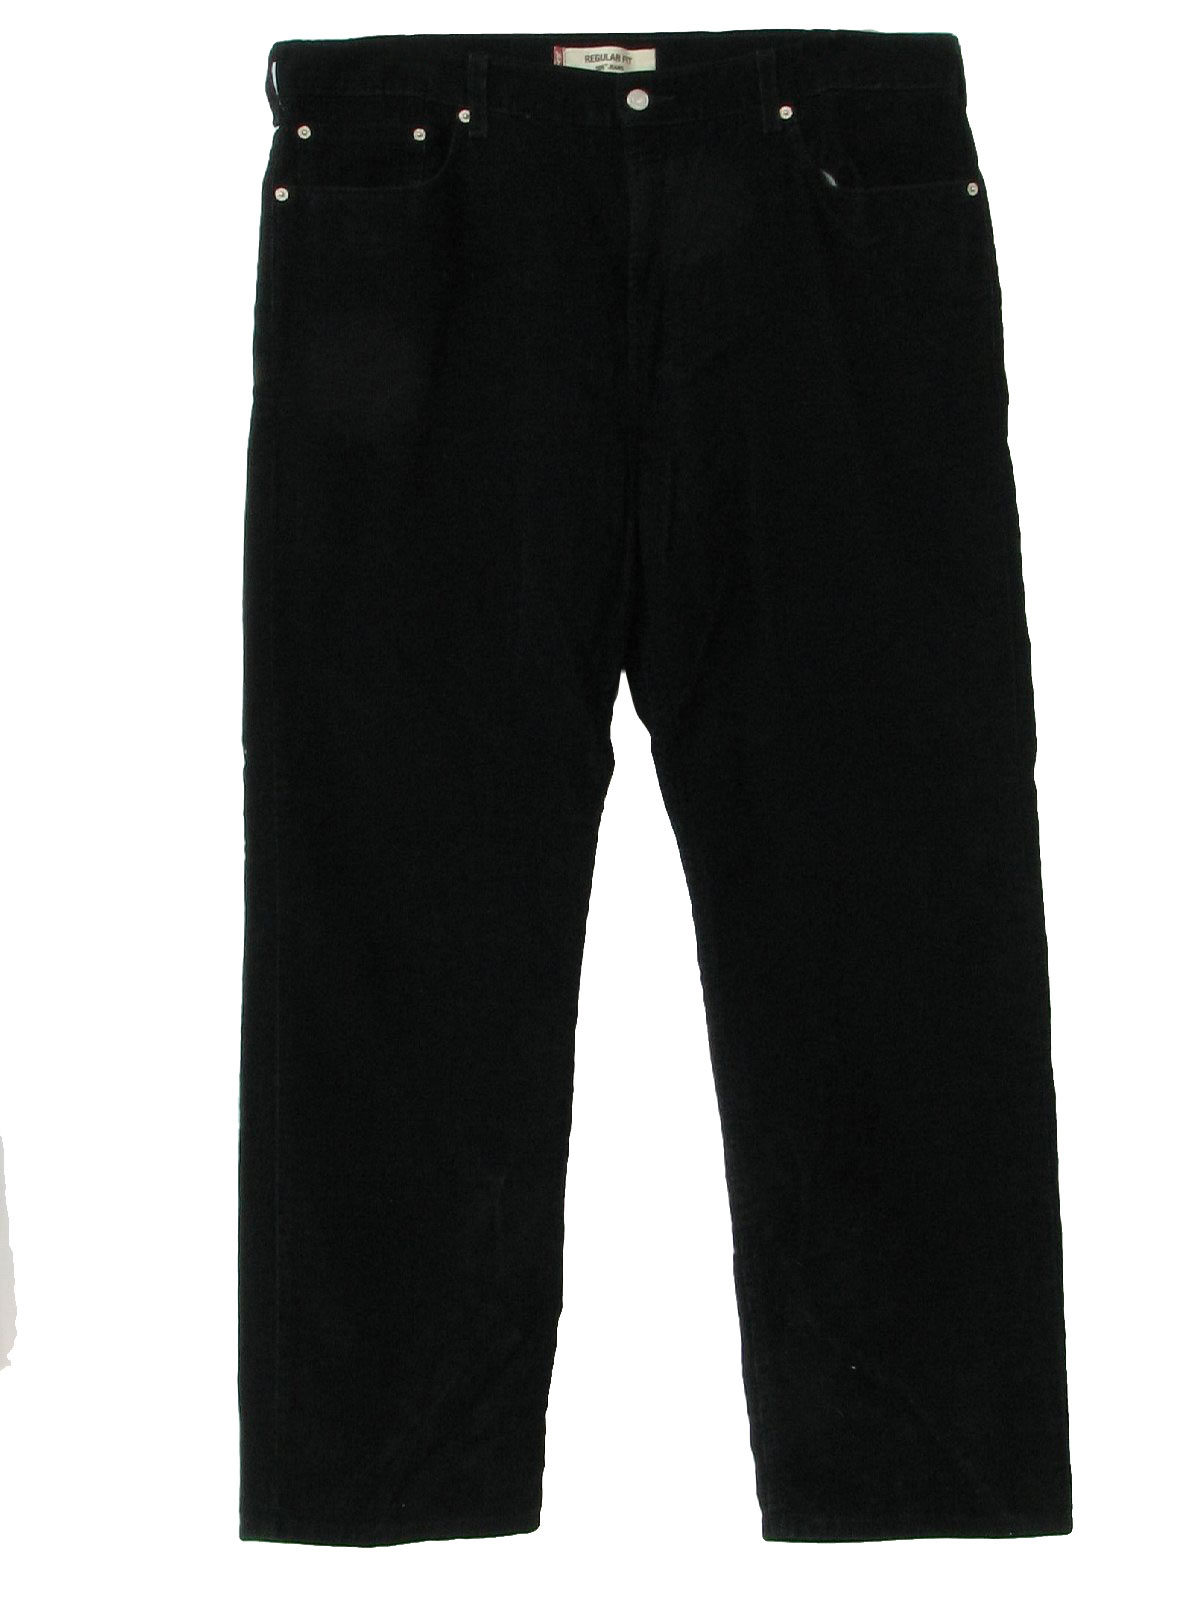 1990s Levis 559 Pants: 90s -Levis 559- Mens black cotton polyester ...